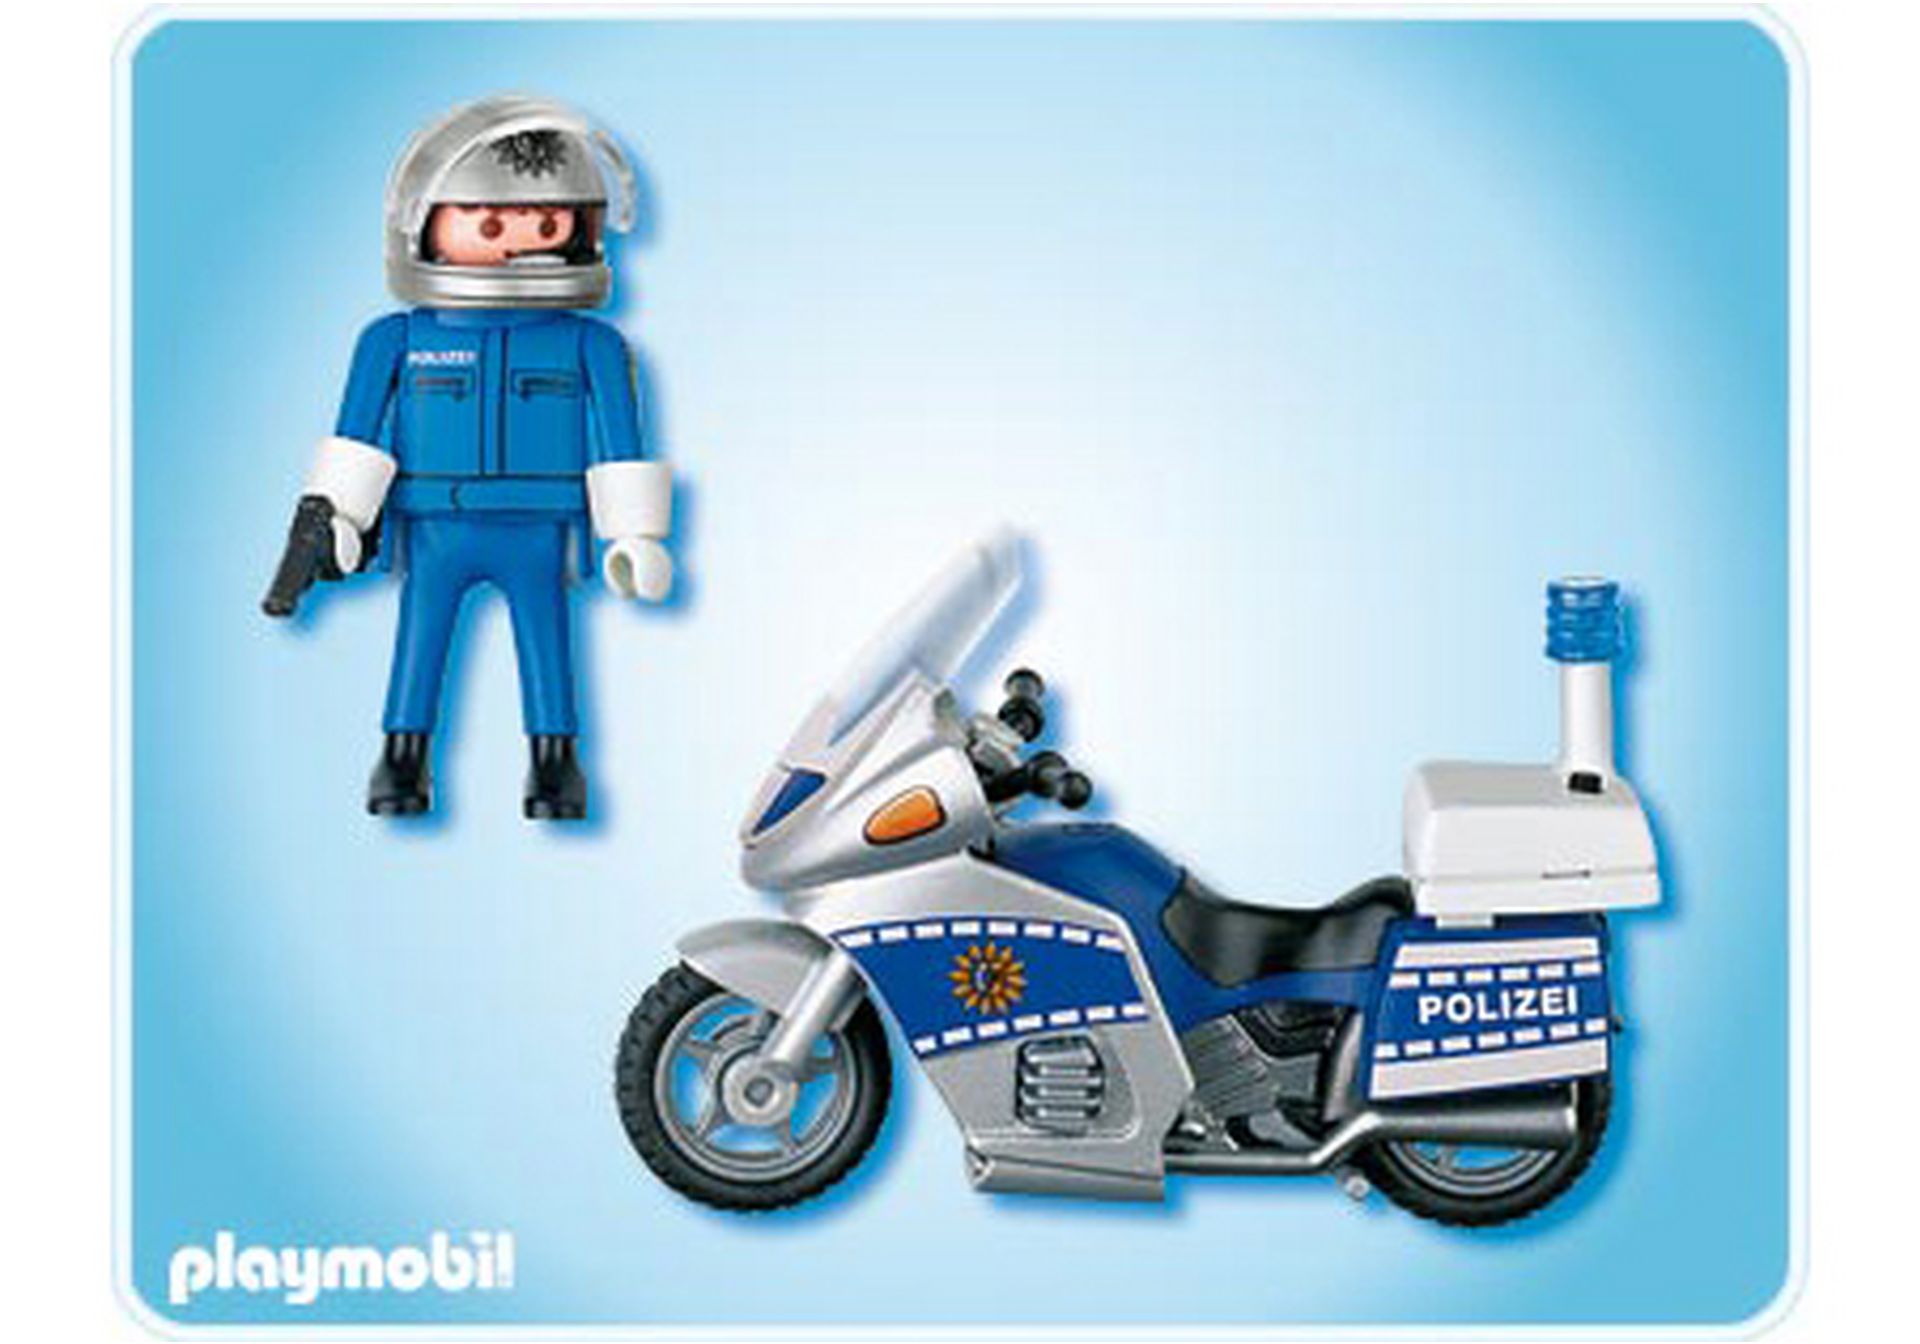 Playmobil 4261 Polizei Motorrad mit Blinklicht Zubehör Polizeistation 117 